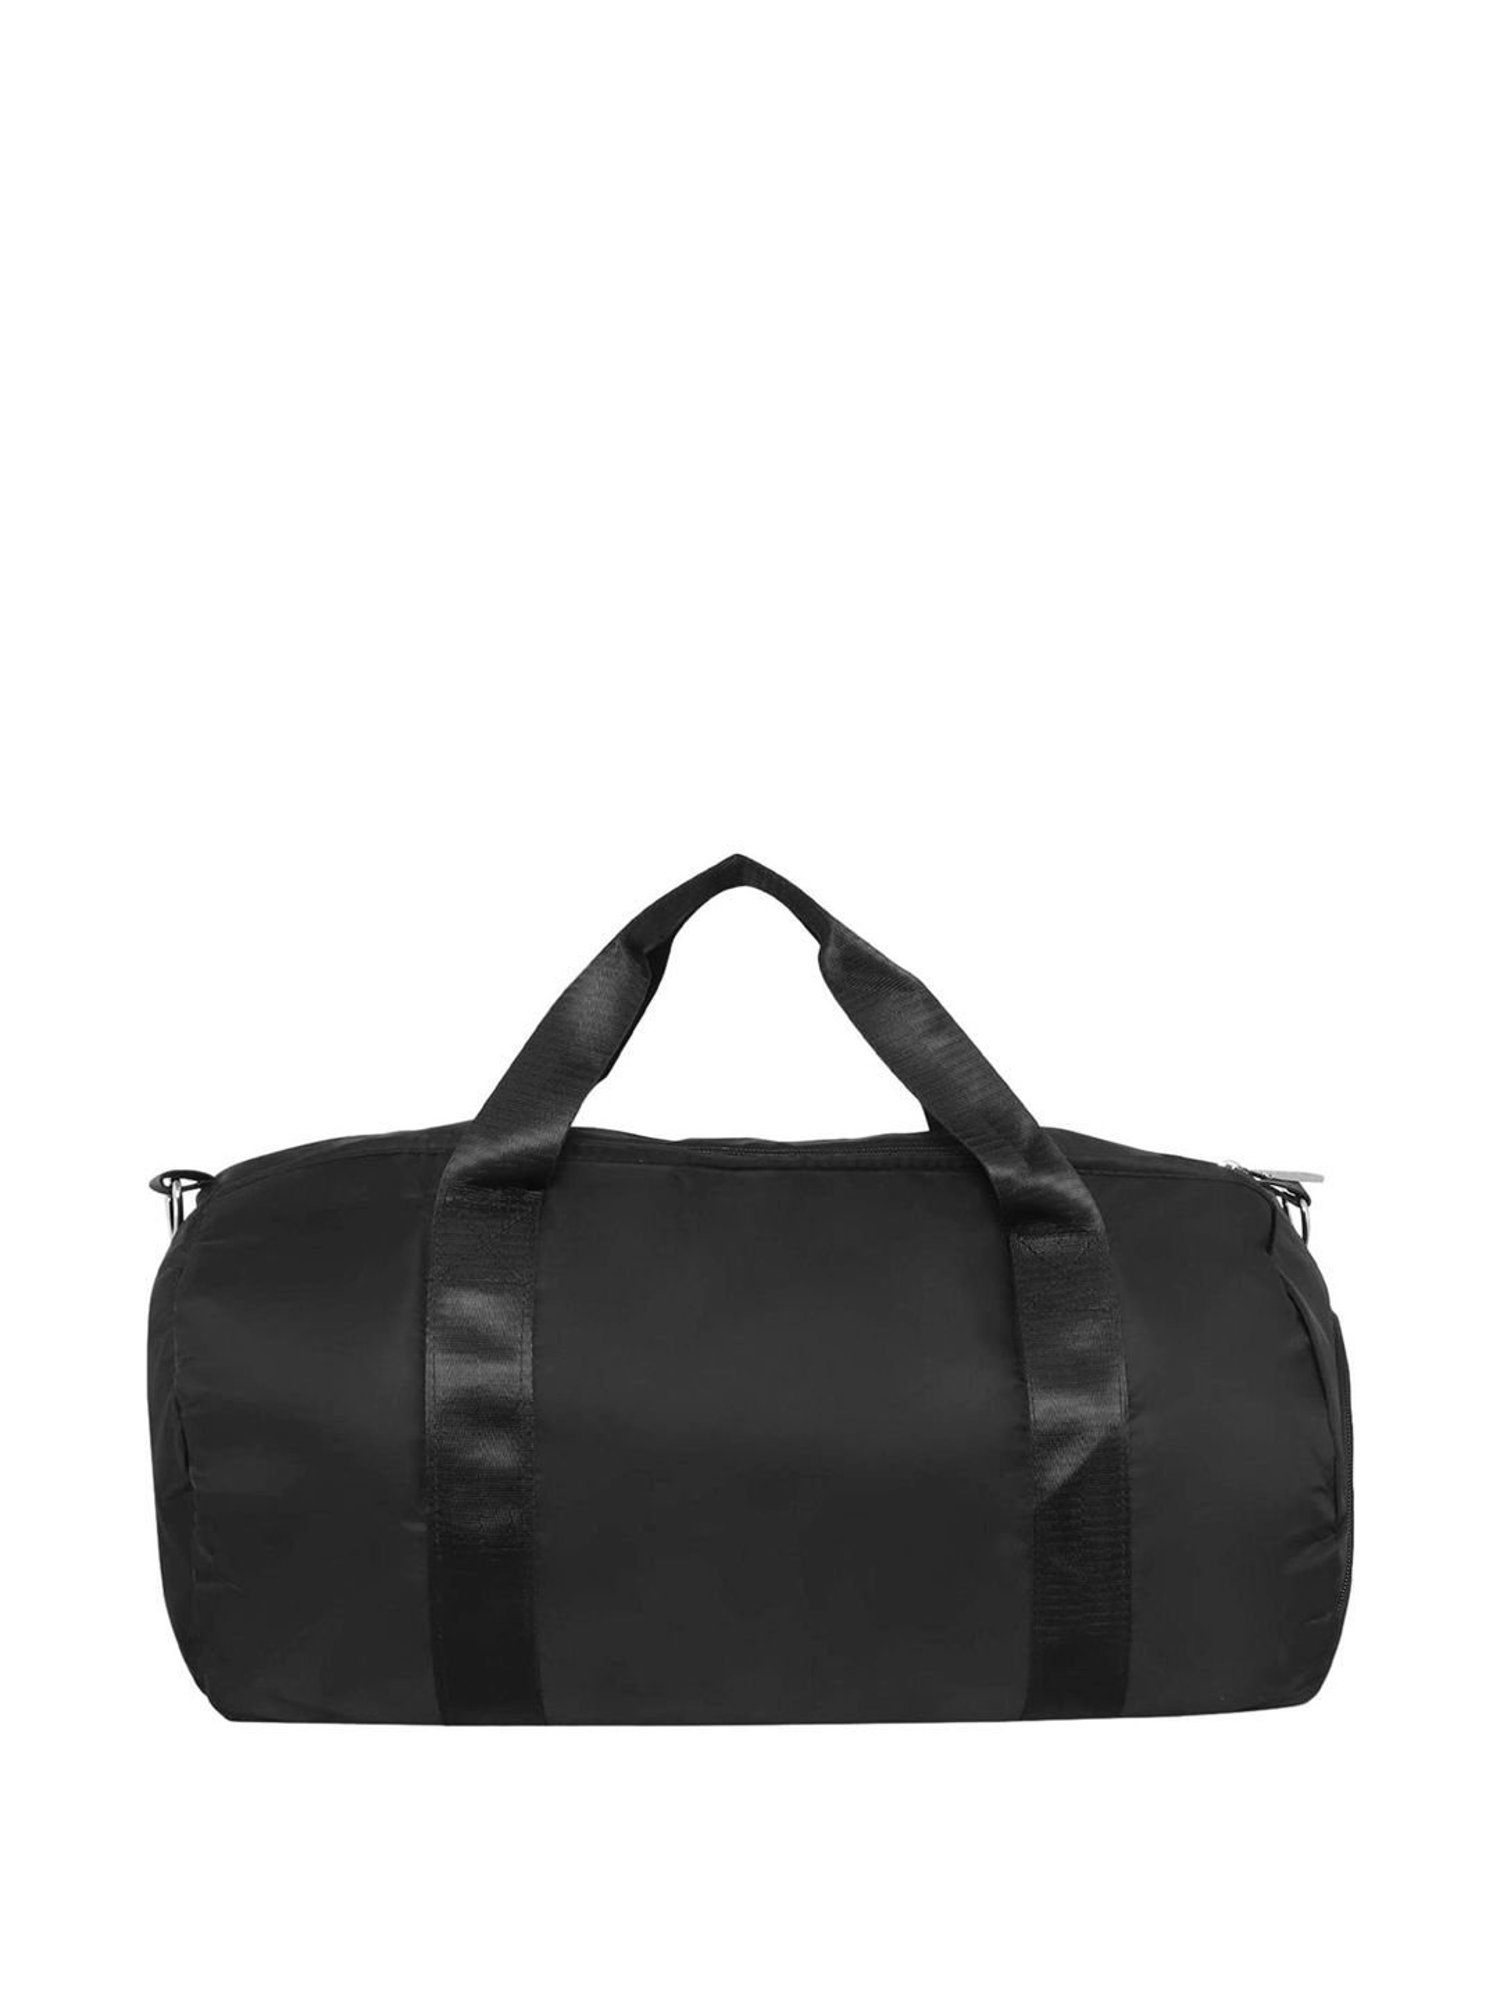 Gym Duffel Bag, Navy Blue – Mercury Luggage